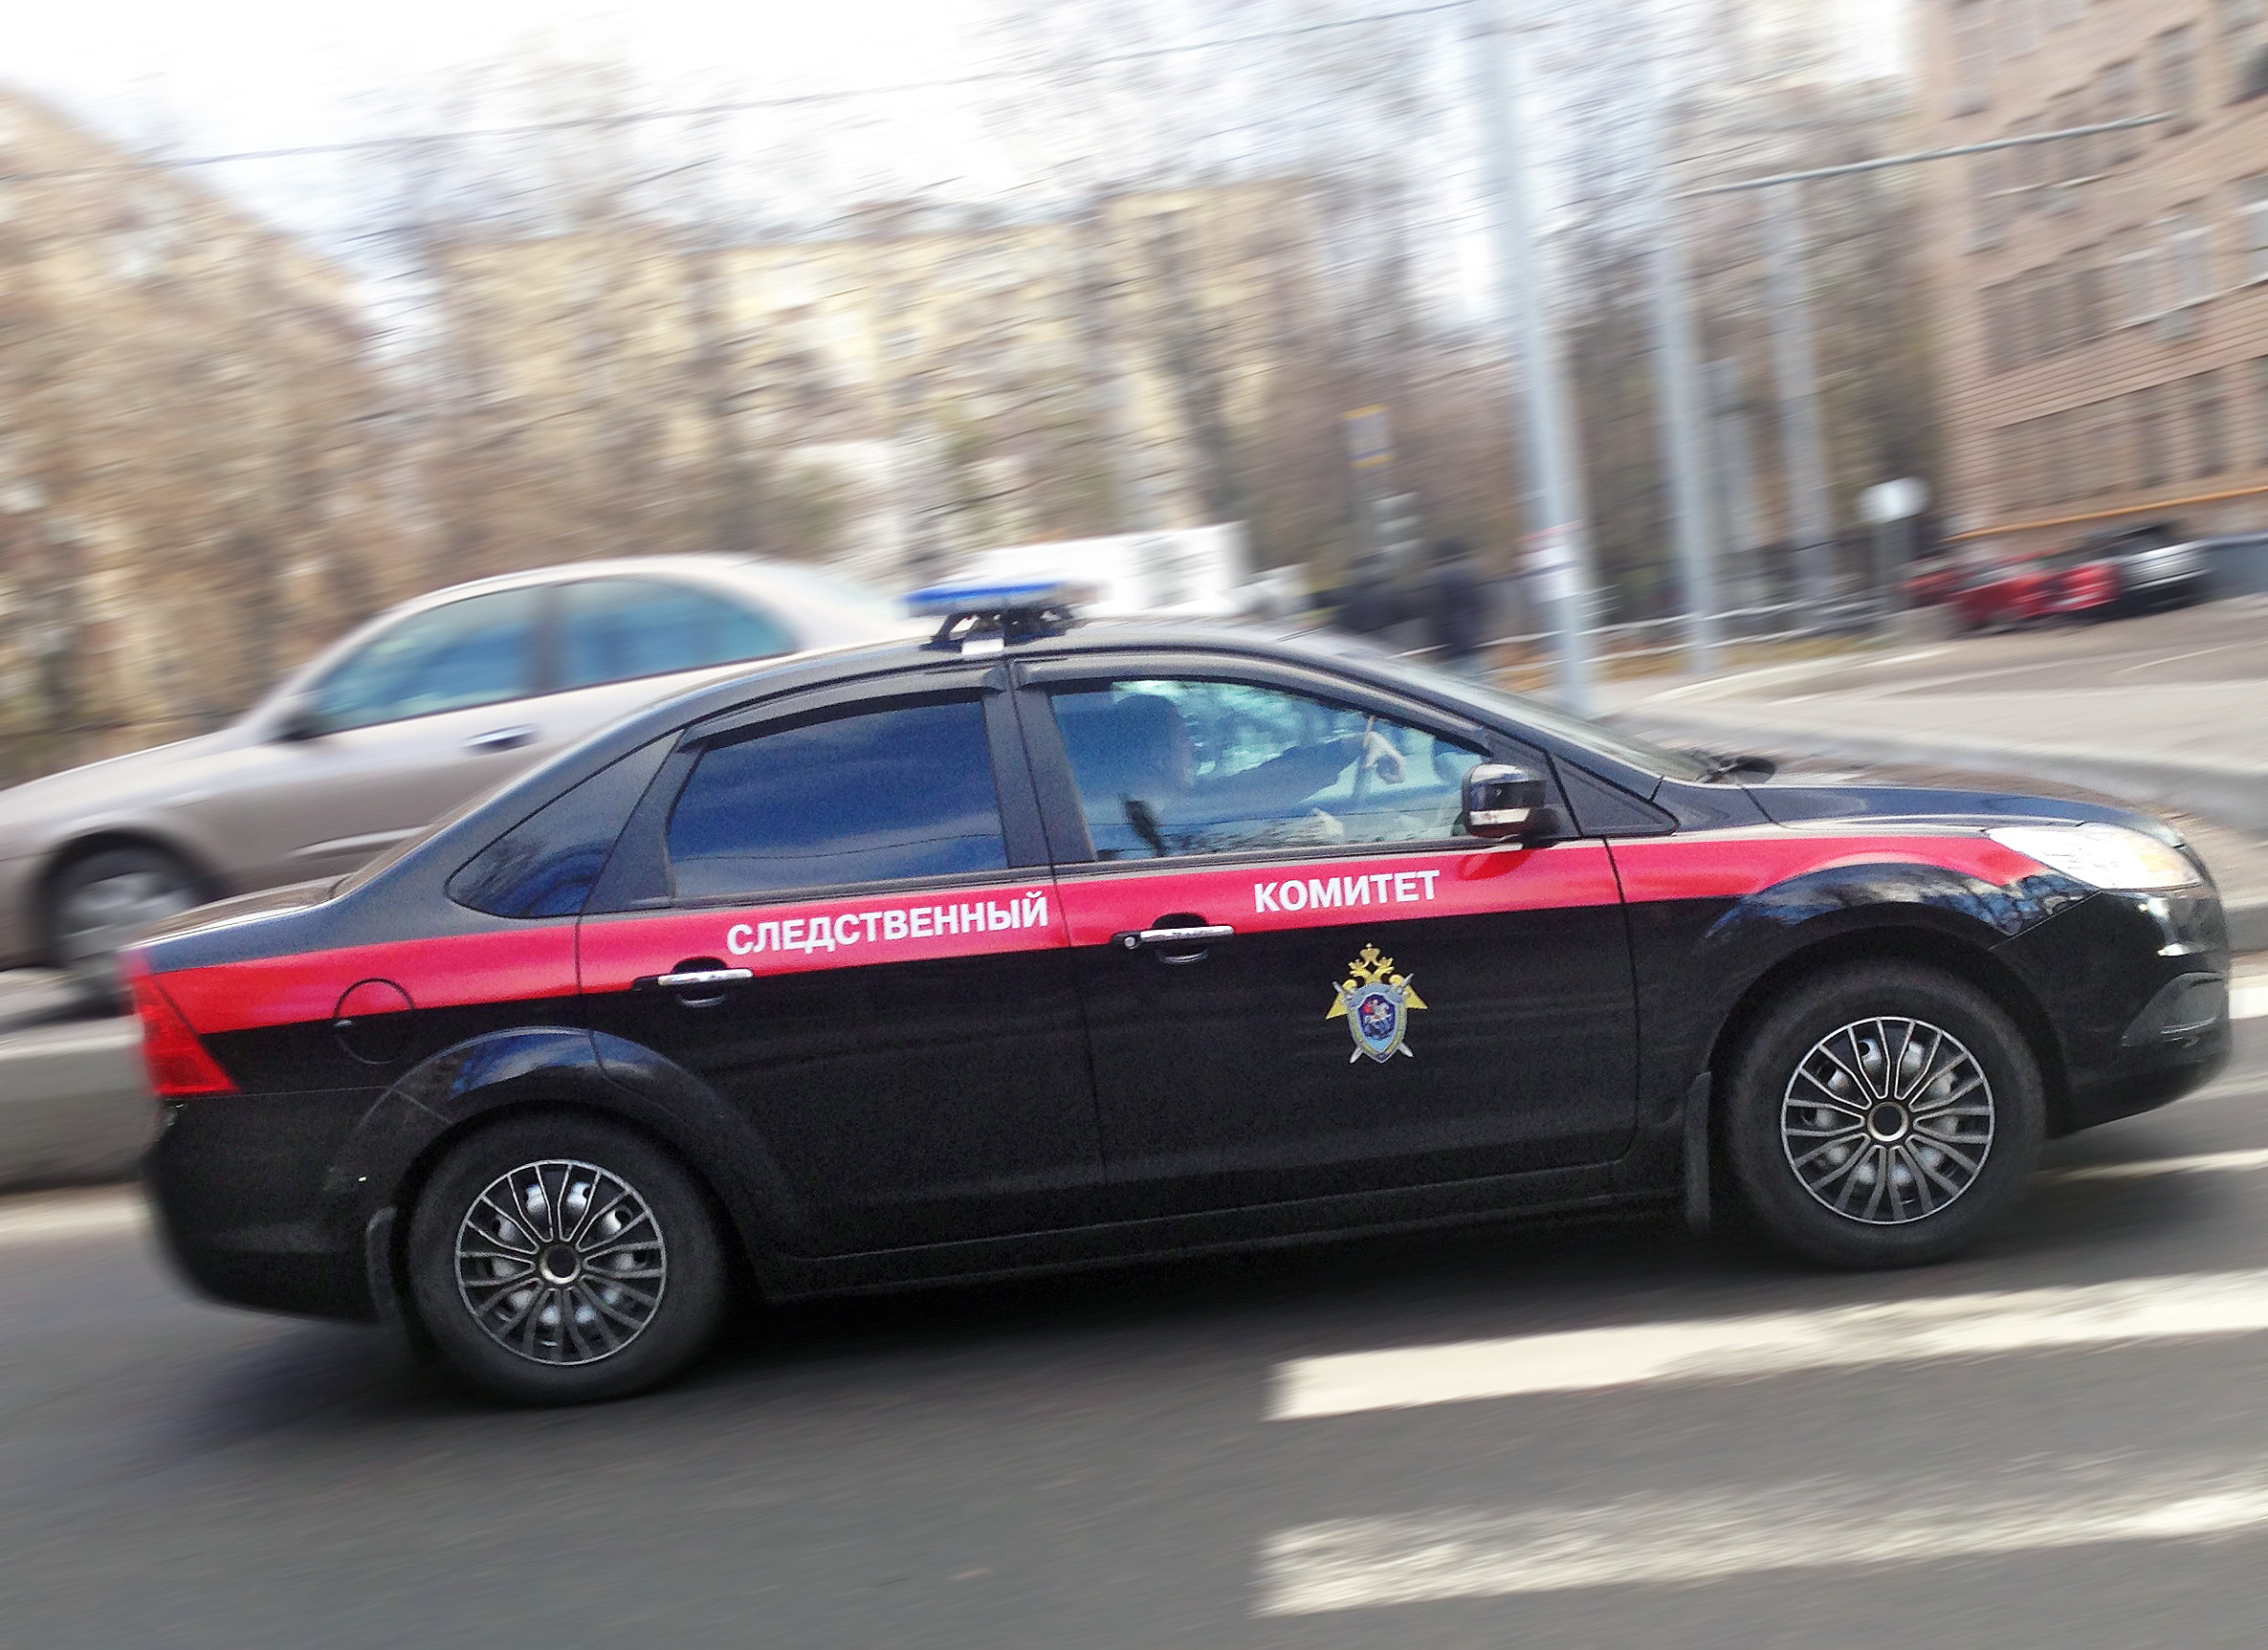 Инспектор ГИБДД в Костроме осужден за преступную лояльность на экзамене